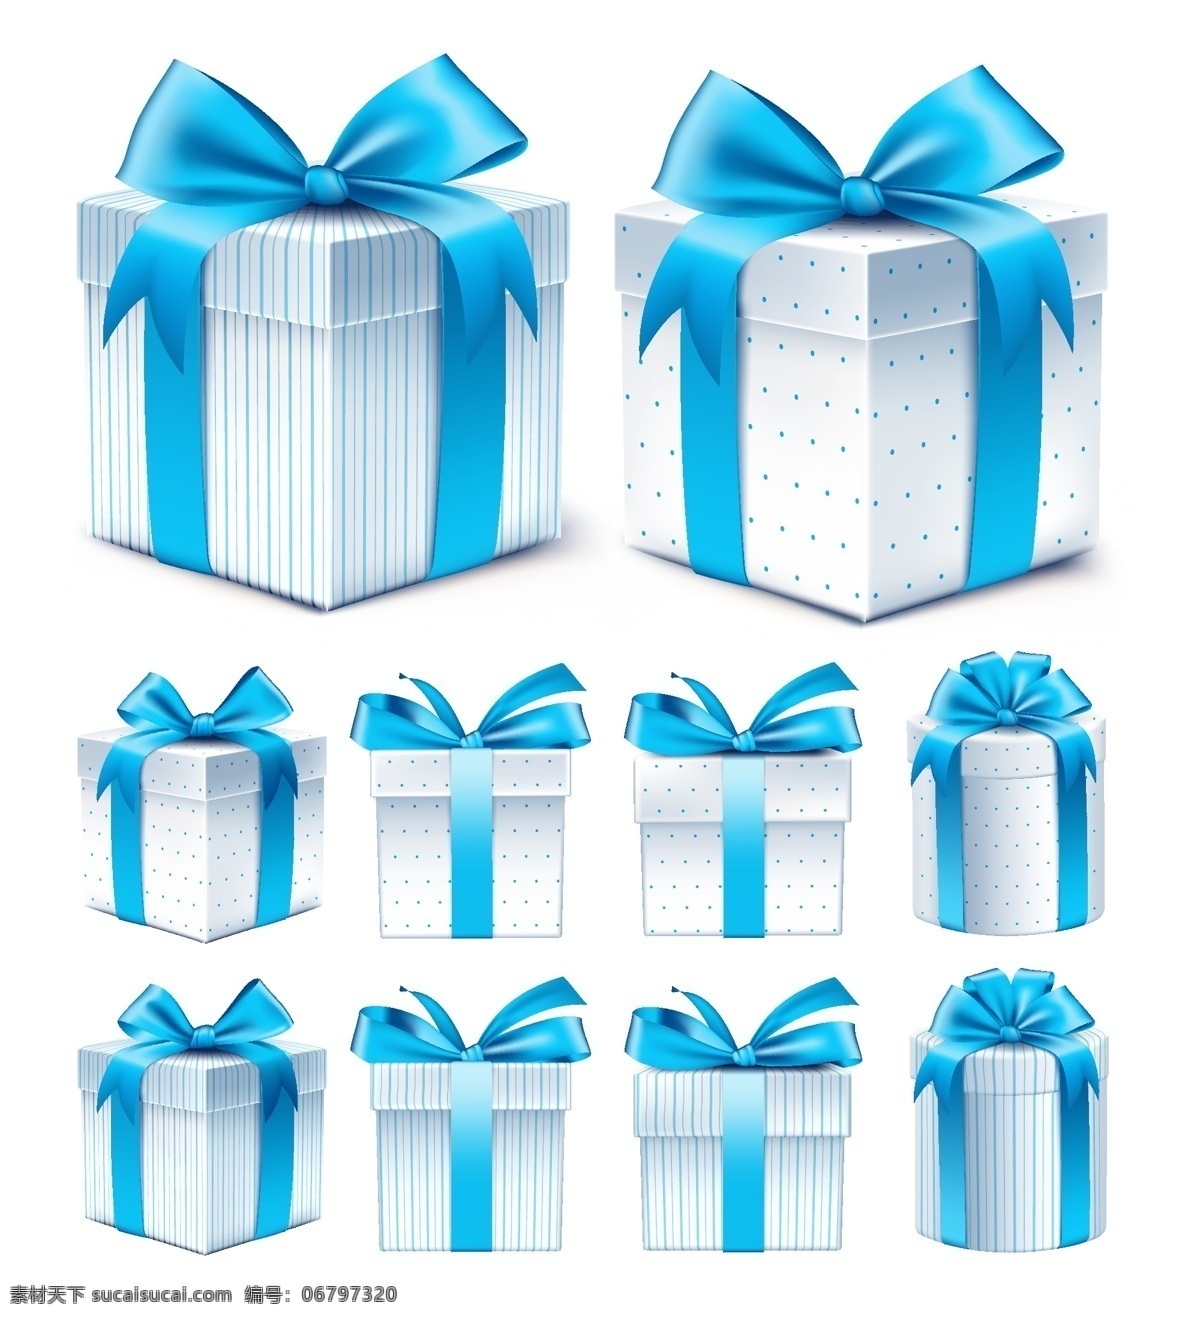 矢量蓝色礼盒 礼盒 礼物盒 礼物 矢量礼盒 礼盒元素 盒子 彩色盒子 设计元素 源文件 分层 设计素材 矢量 蓝色礼盒